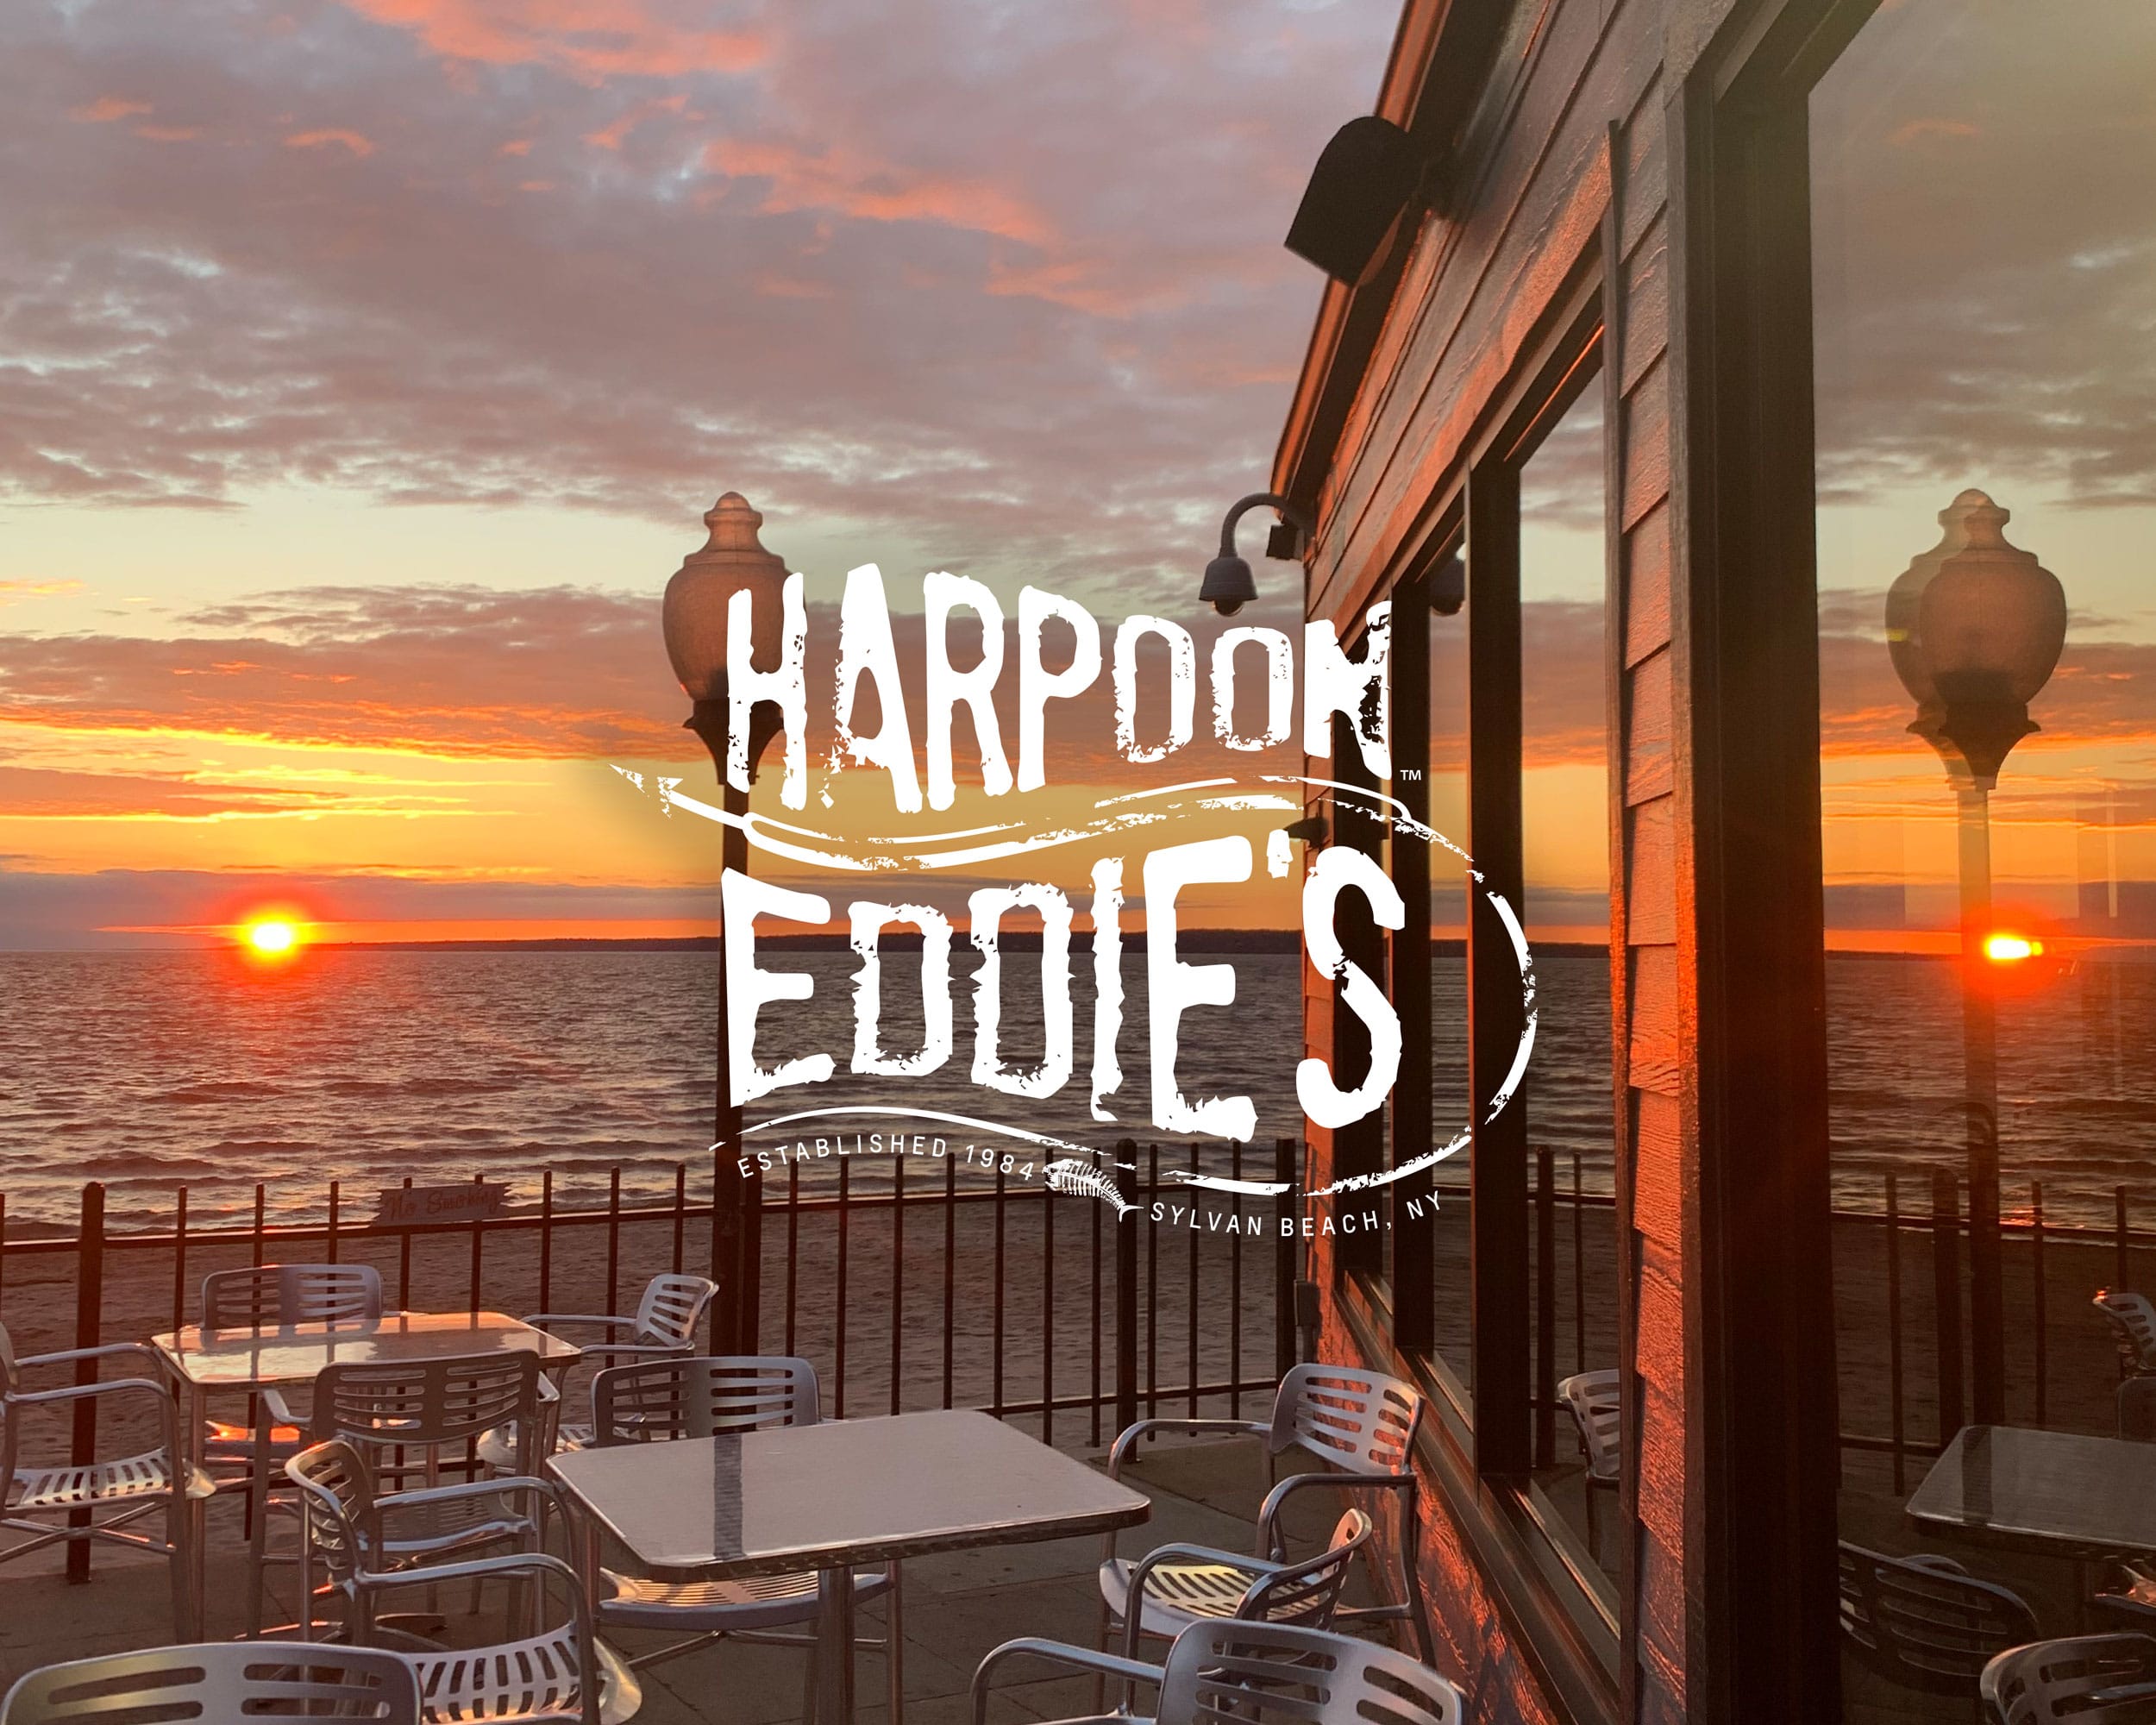 Harpoon Eddie's